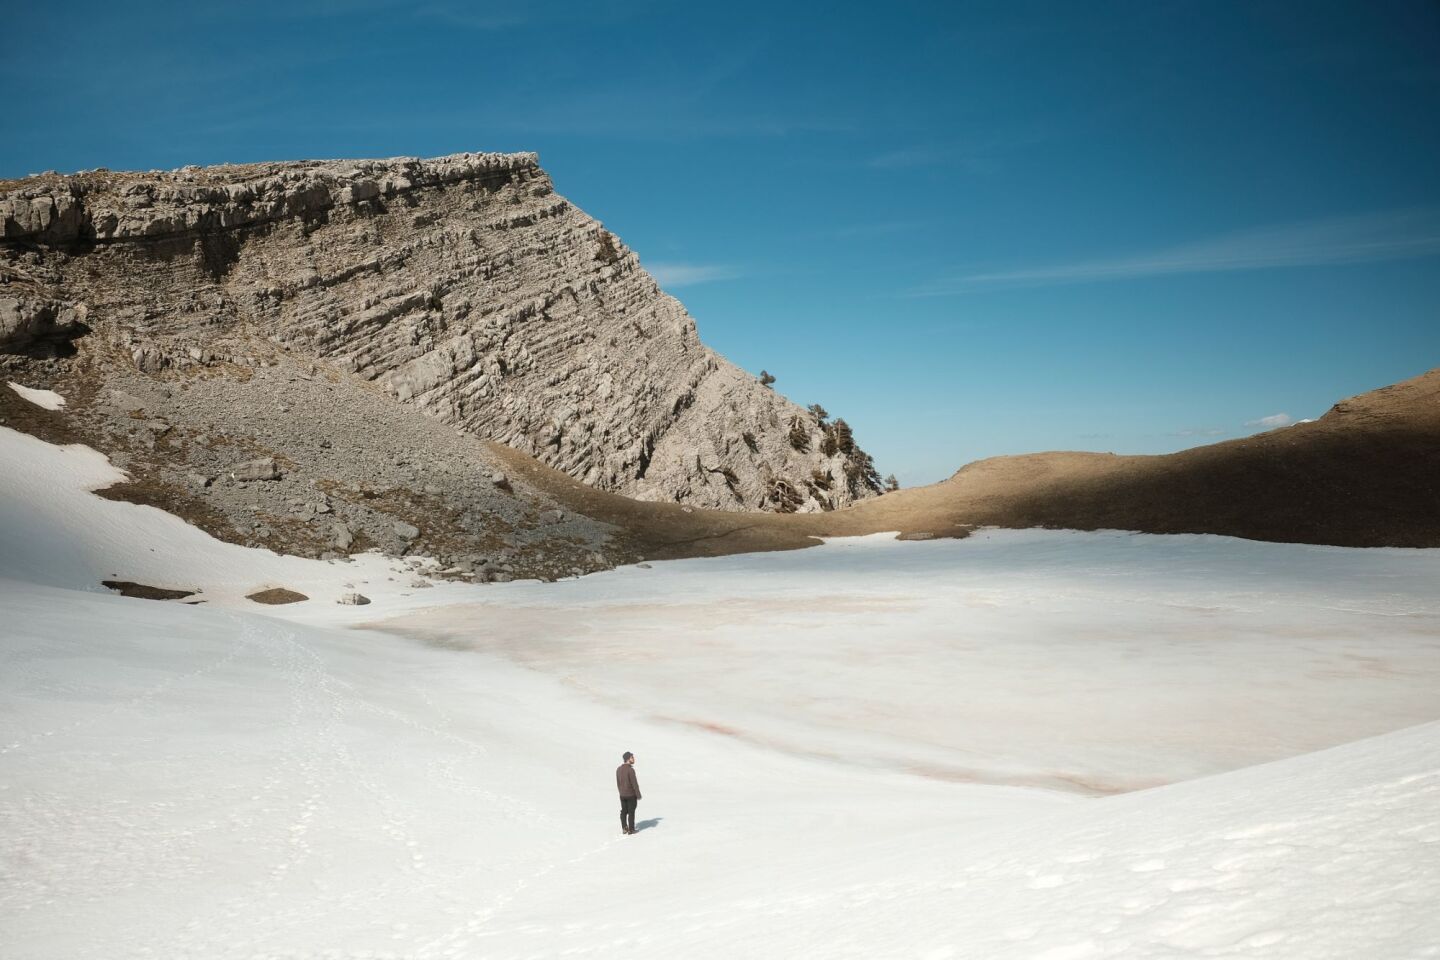 Ανάβαση στην παγωμένη δρακόλιμνη της Τύμφης, Ιωάννινα, 26 Μαρτίου 2023